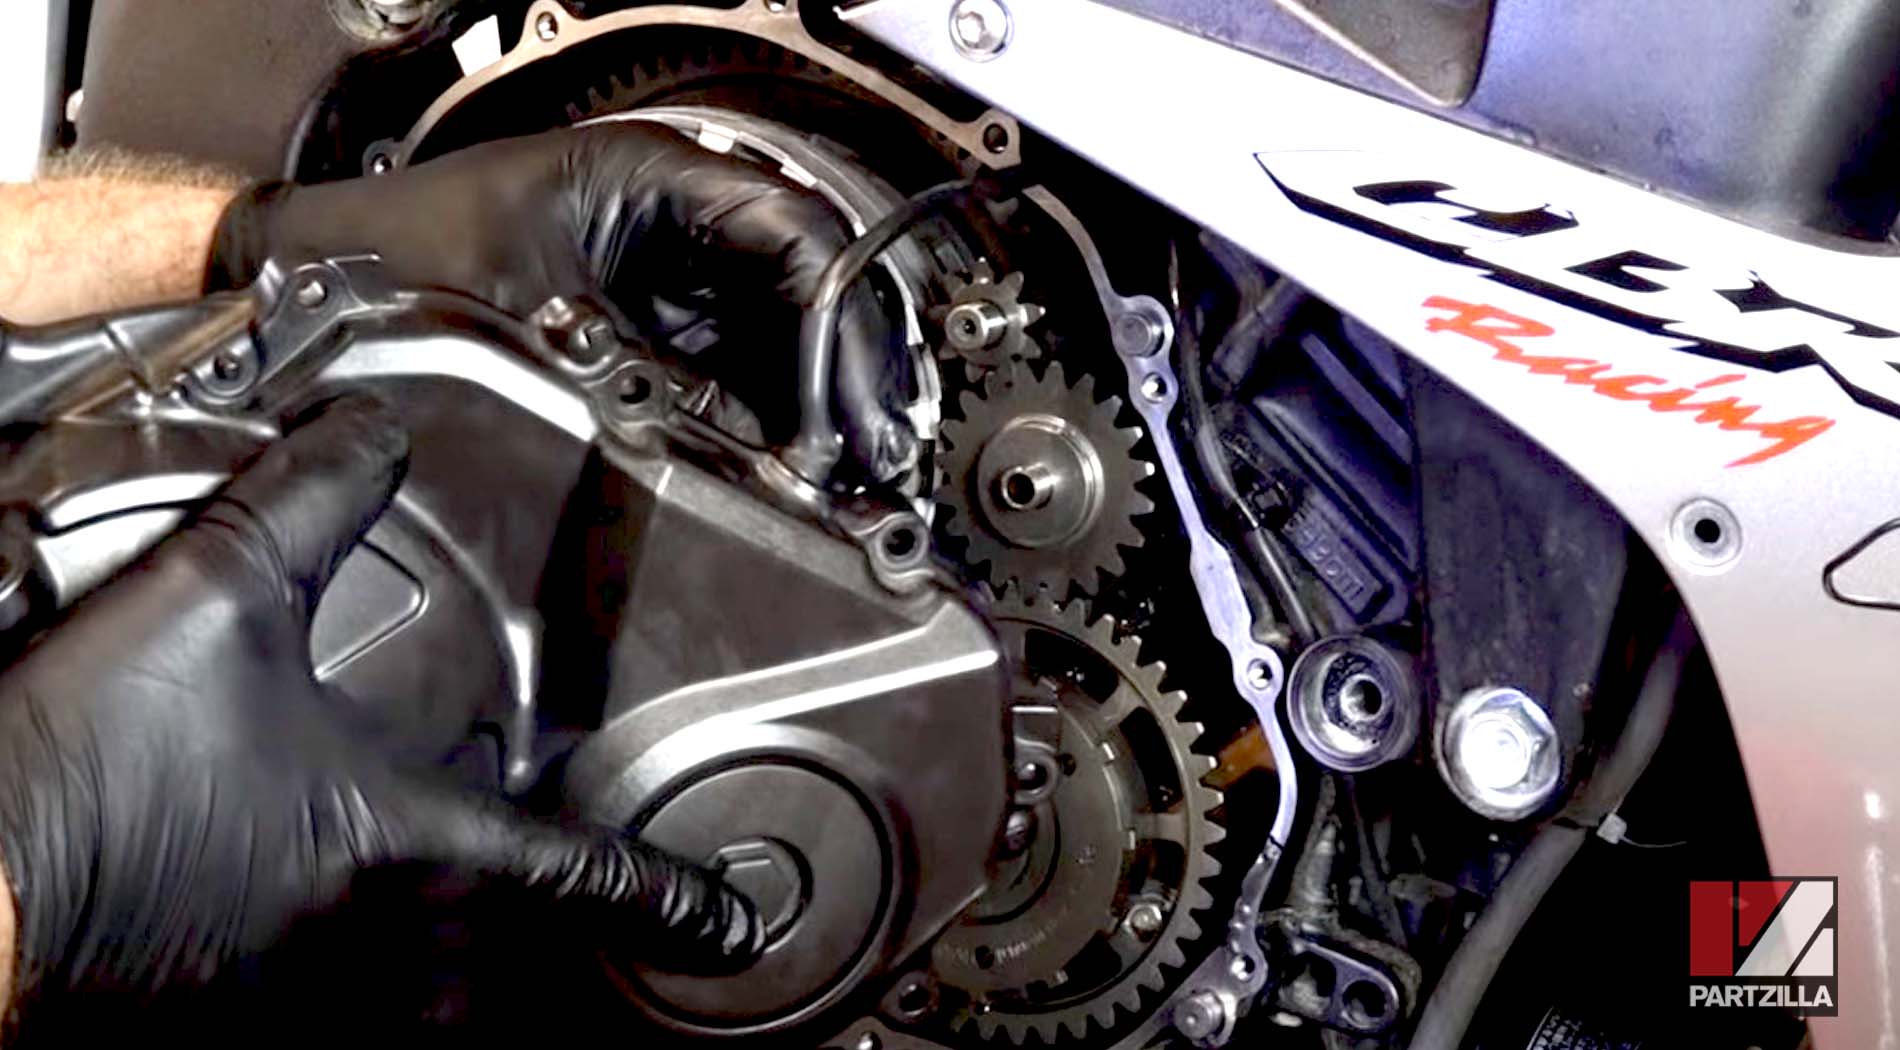 Honda CBR600 clutch rebuild replace cover